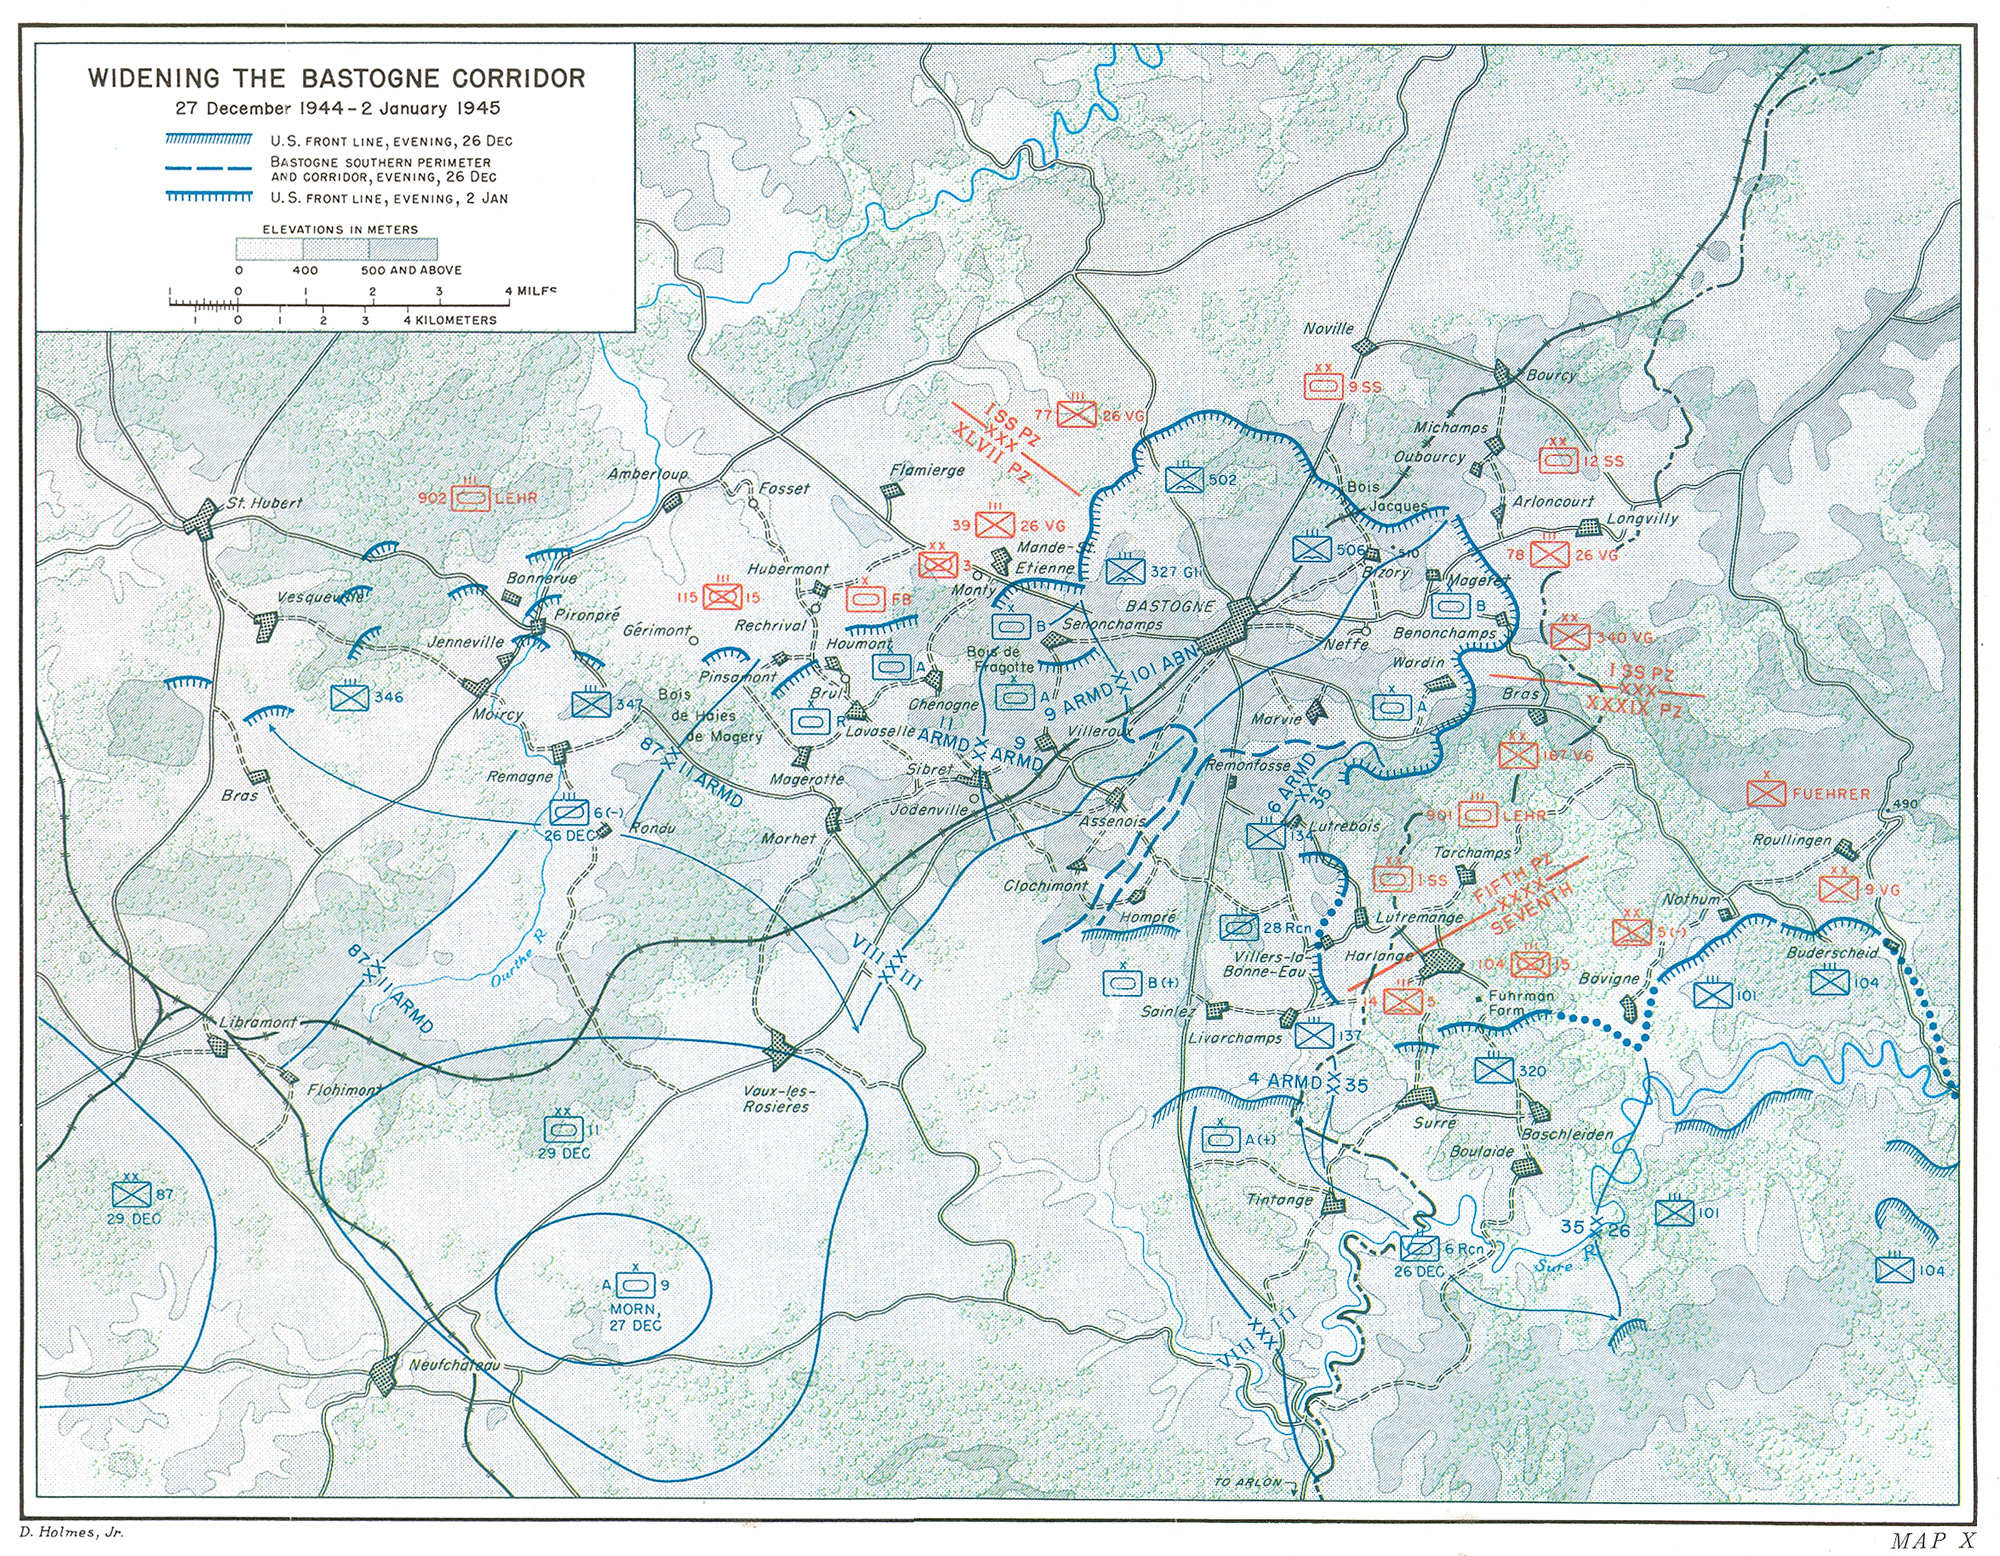 Siege Of Bastogne Backgrounds, Compatible - PC, Mobile, Gadgets| 2000x1556 px